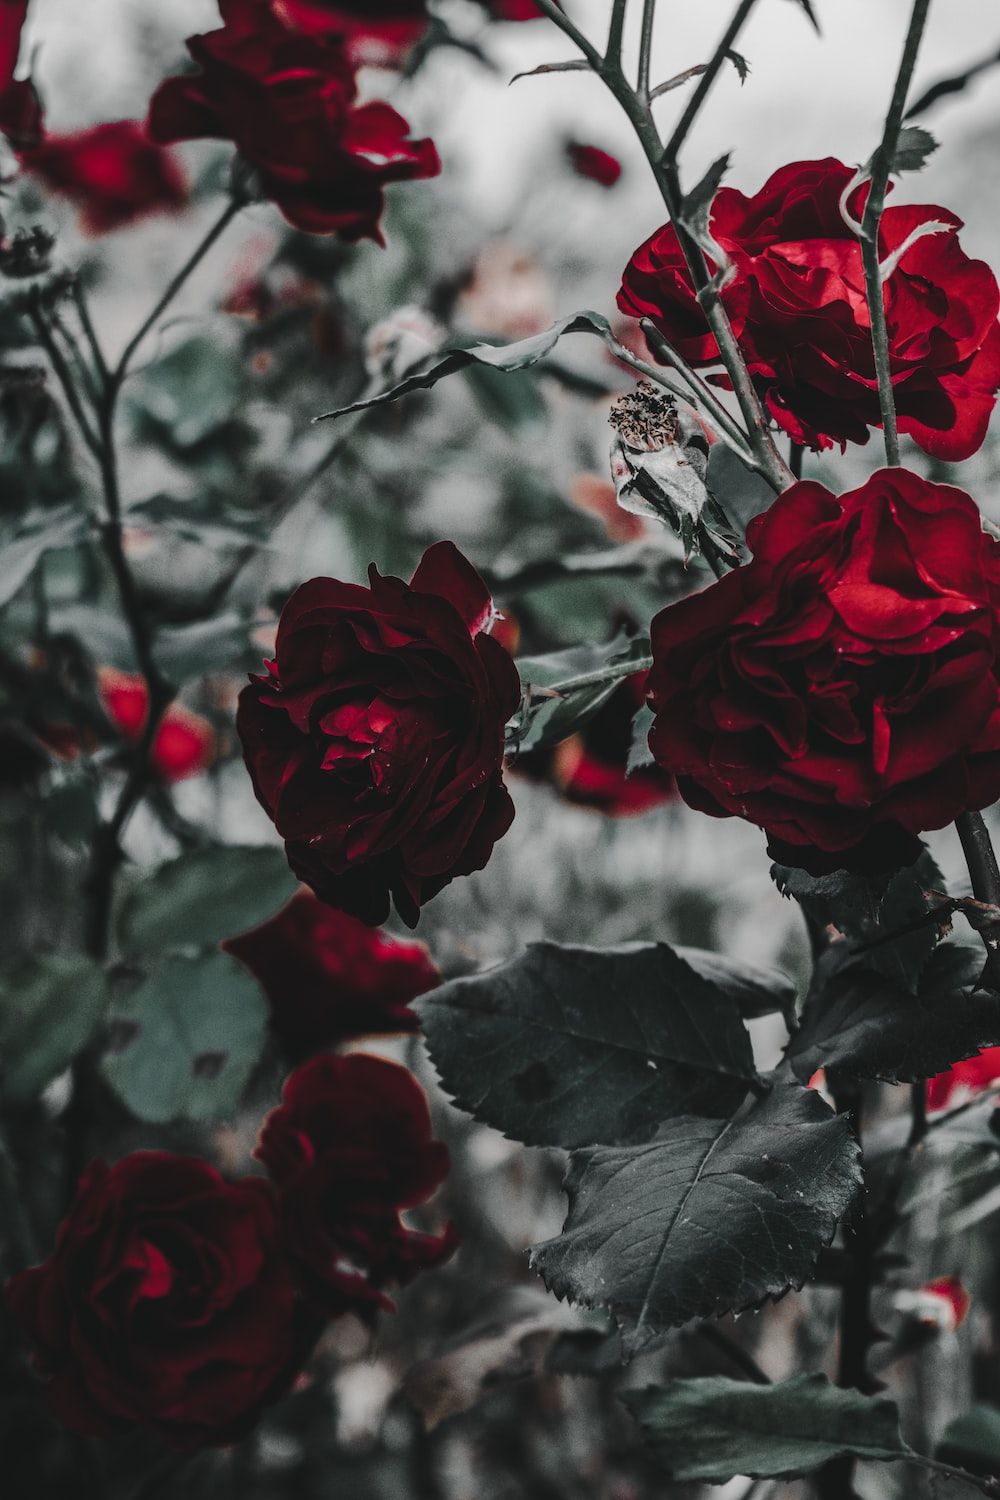  Rote Rosen Hintergrundbild 1000x1500. Foto zum Thema Rote Rosen in der Nahaufnahme